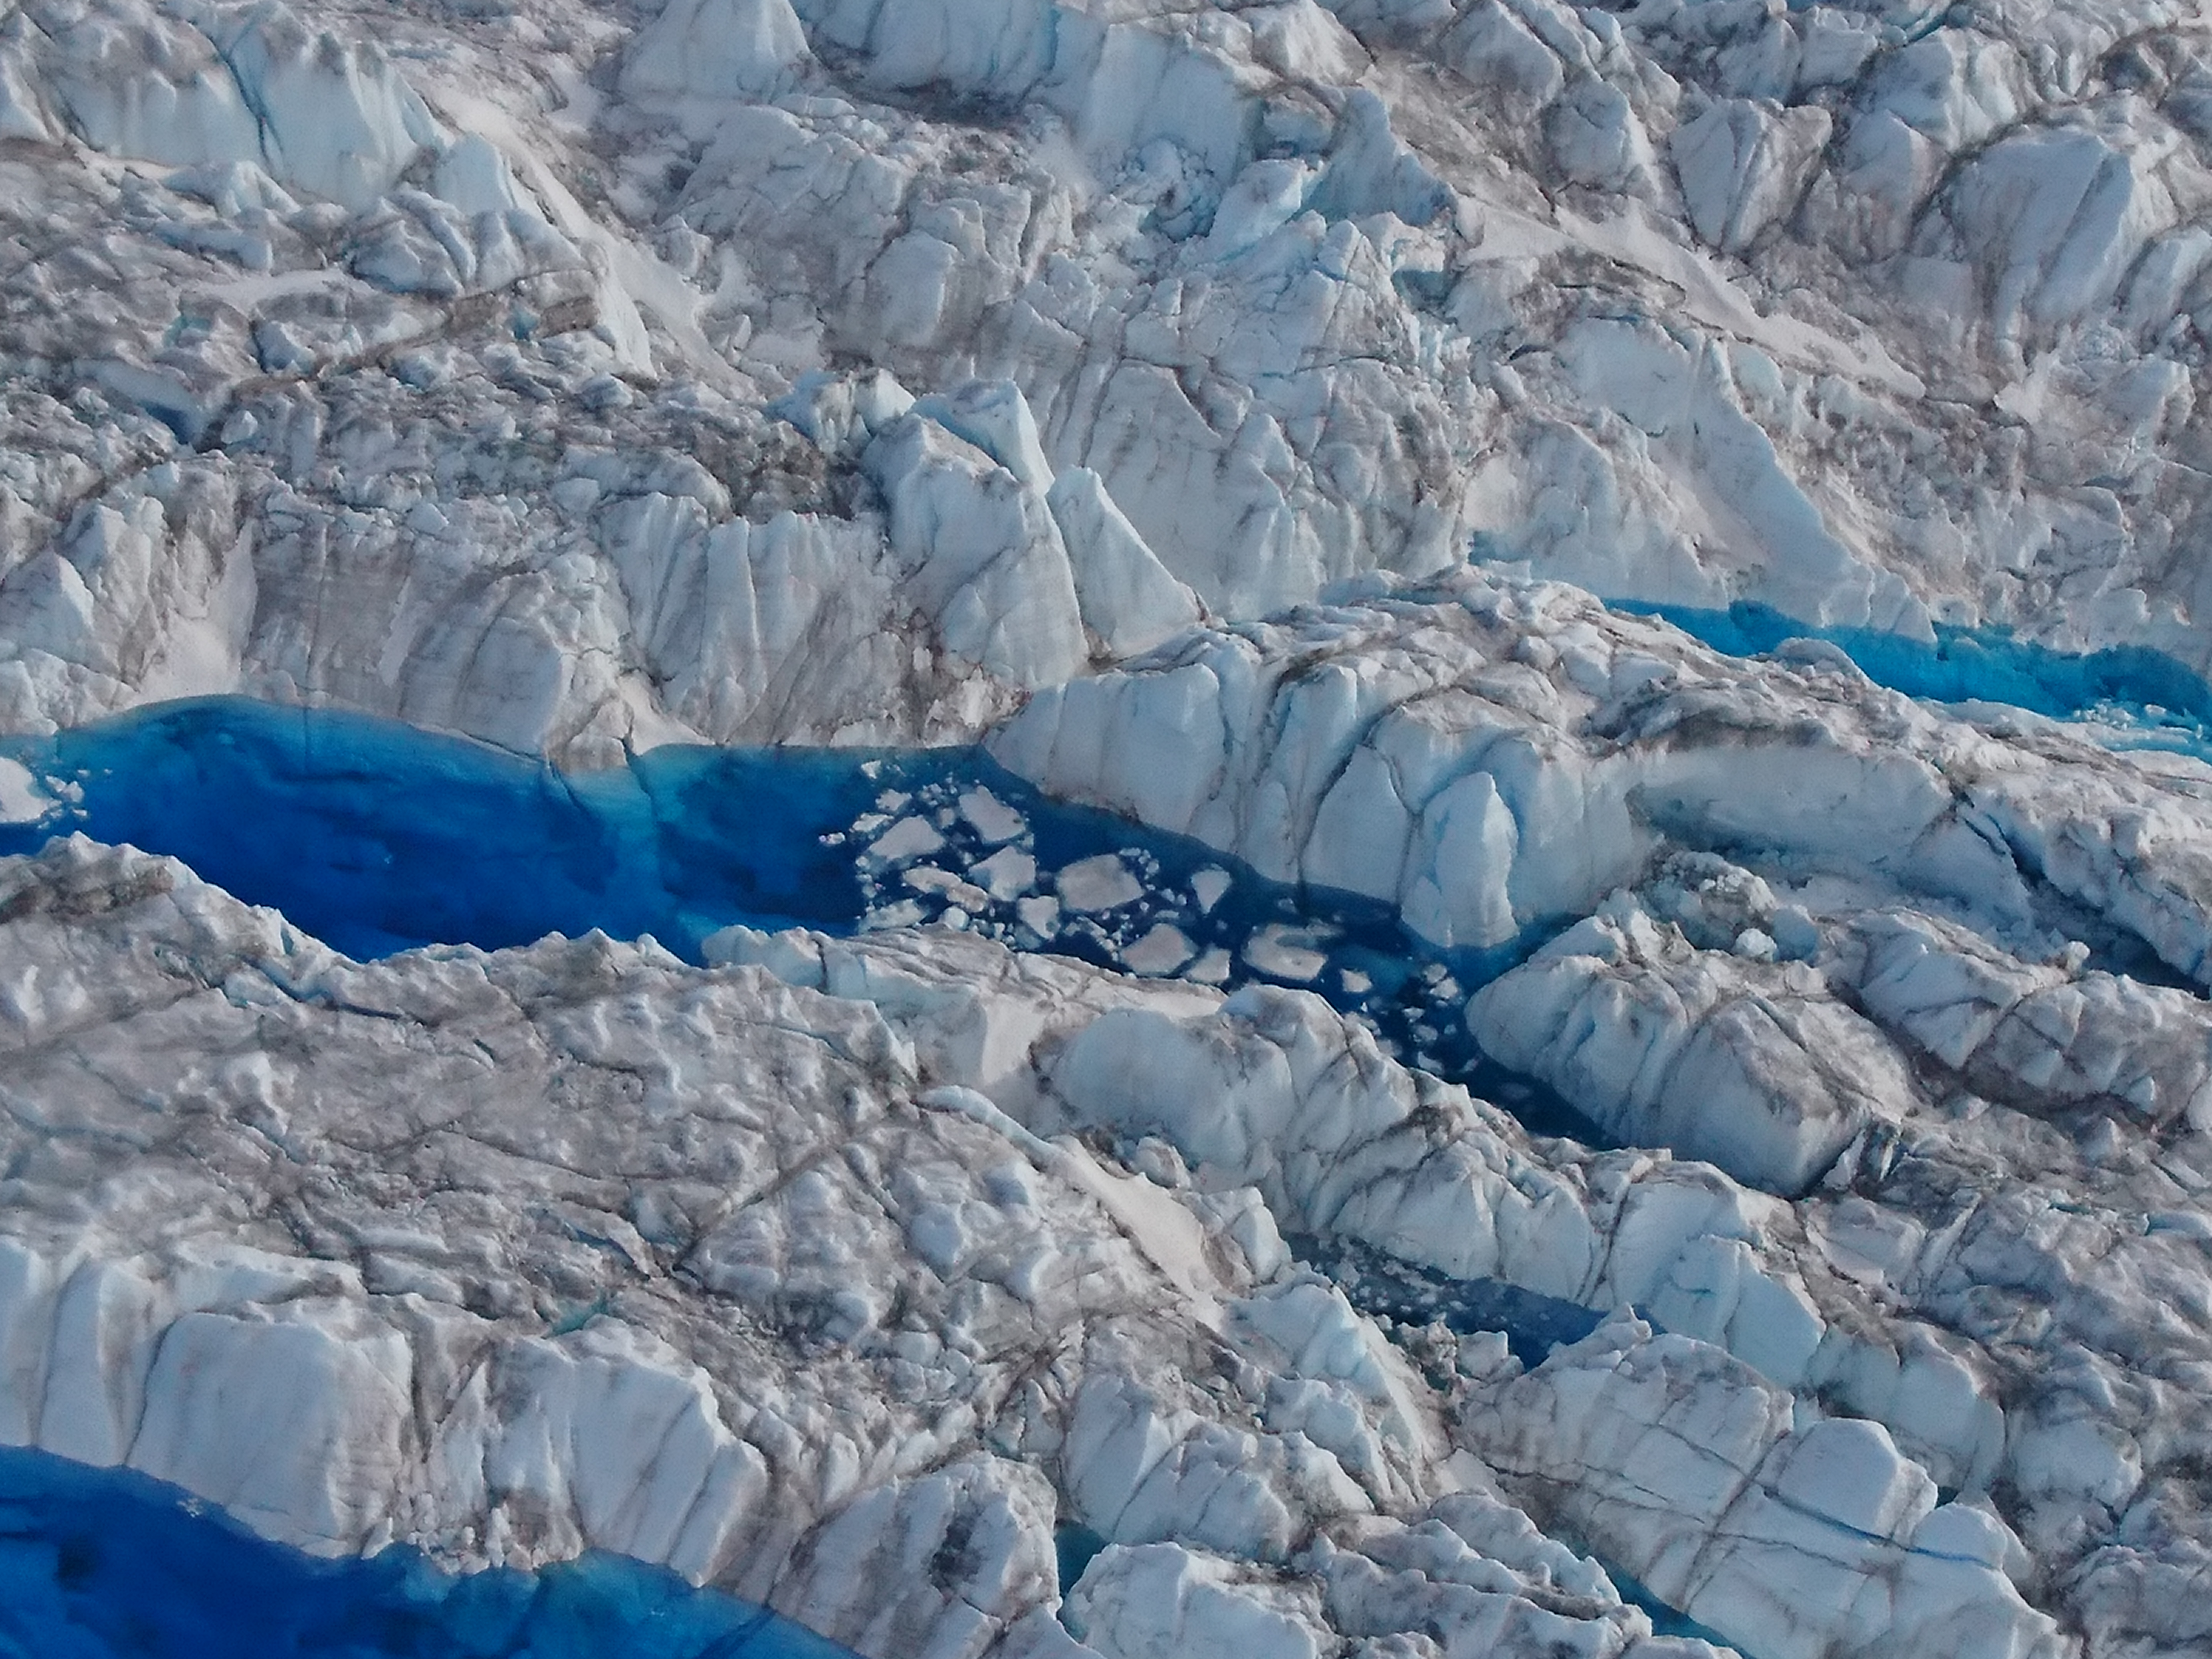 Greenland through the eyes of Mary Katona / Photo : Mary Katona